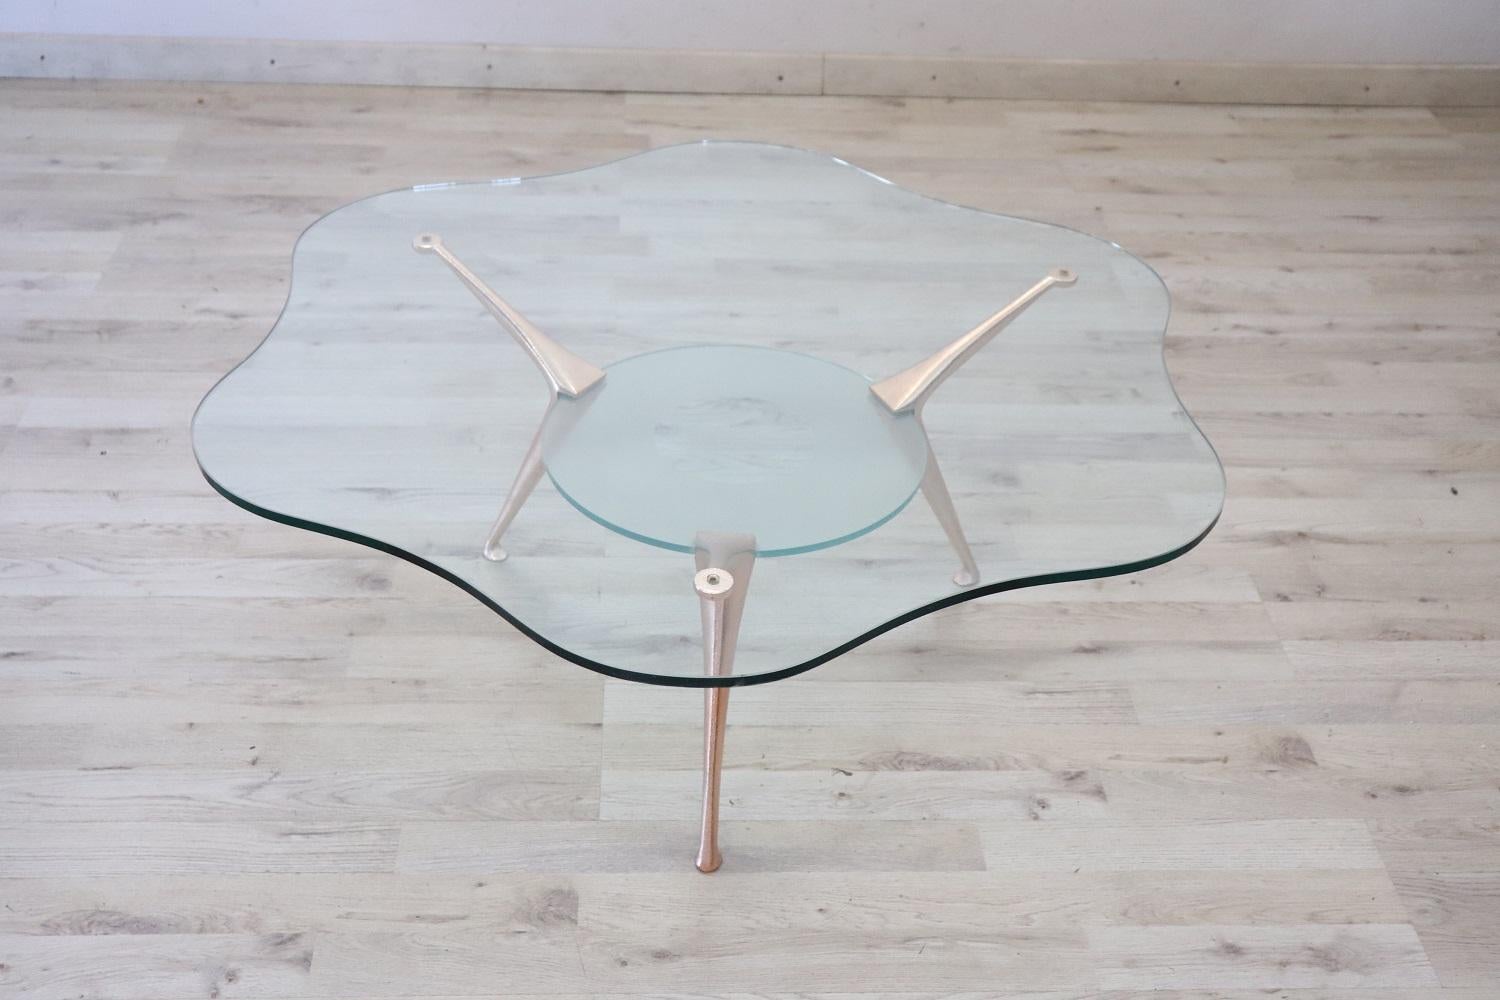 Rare table basse ou table de canapé de design italien des années 1970 par Bontempi. La table est dotée de pieds en acier laqué. Le plateau en verre a une forme de fleur particulière. Parfait pour les environnements modernes.